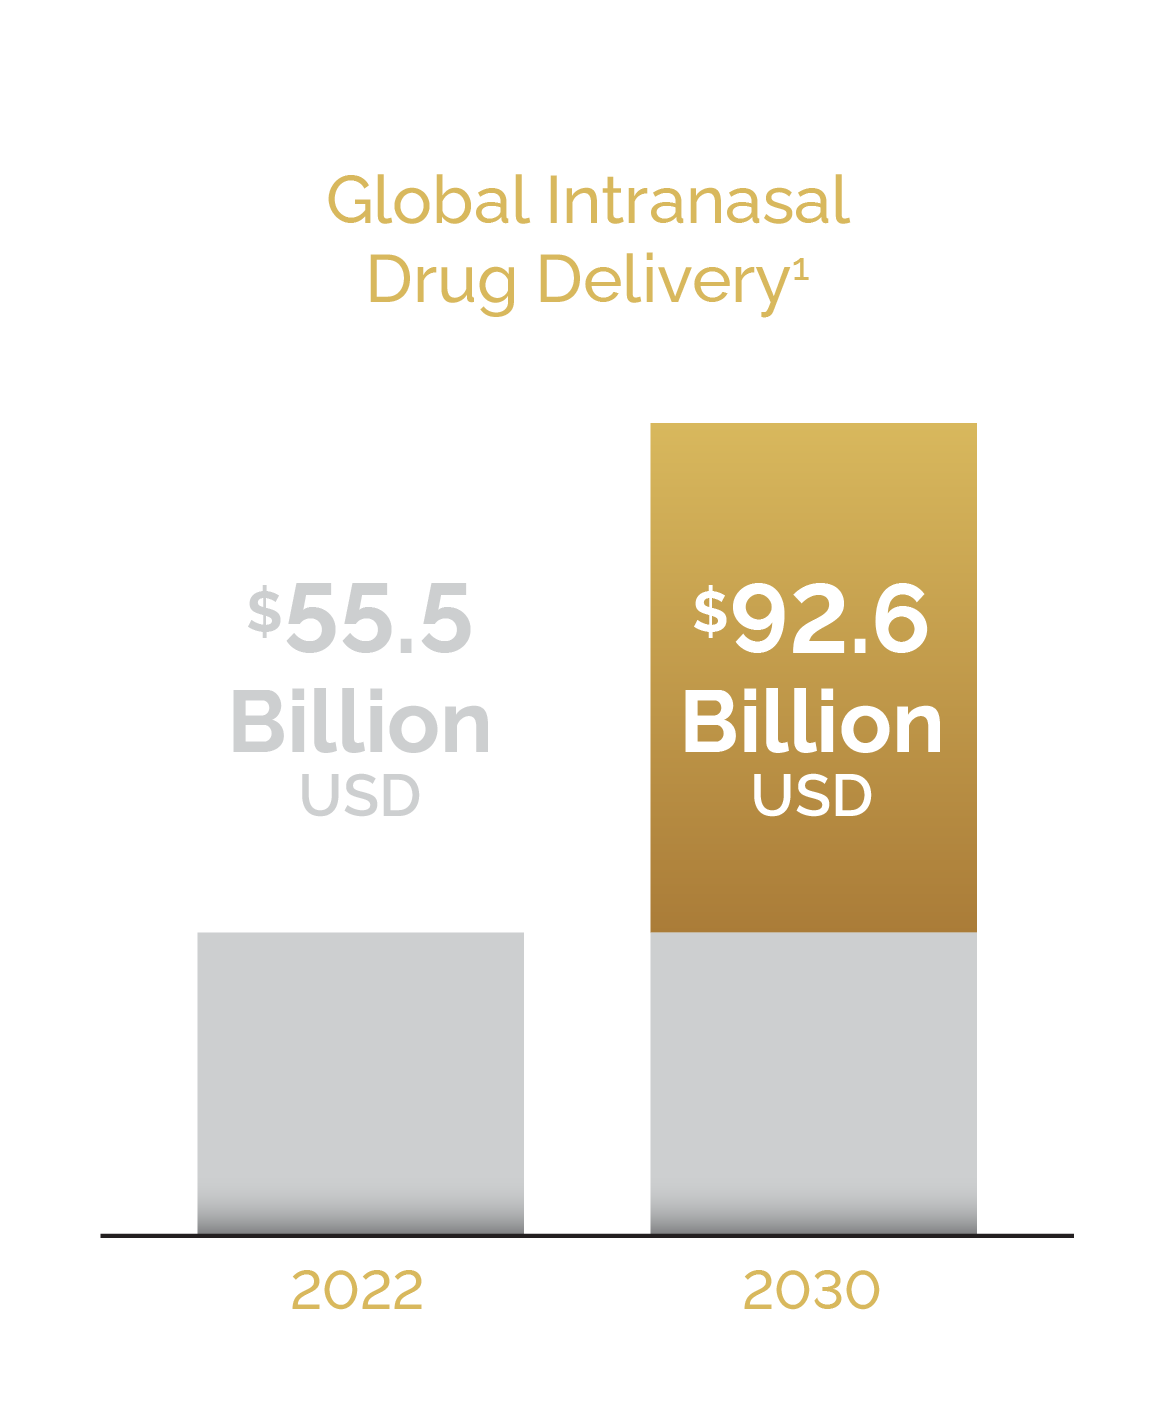 Global Intranasal drug delivery market size